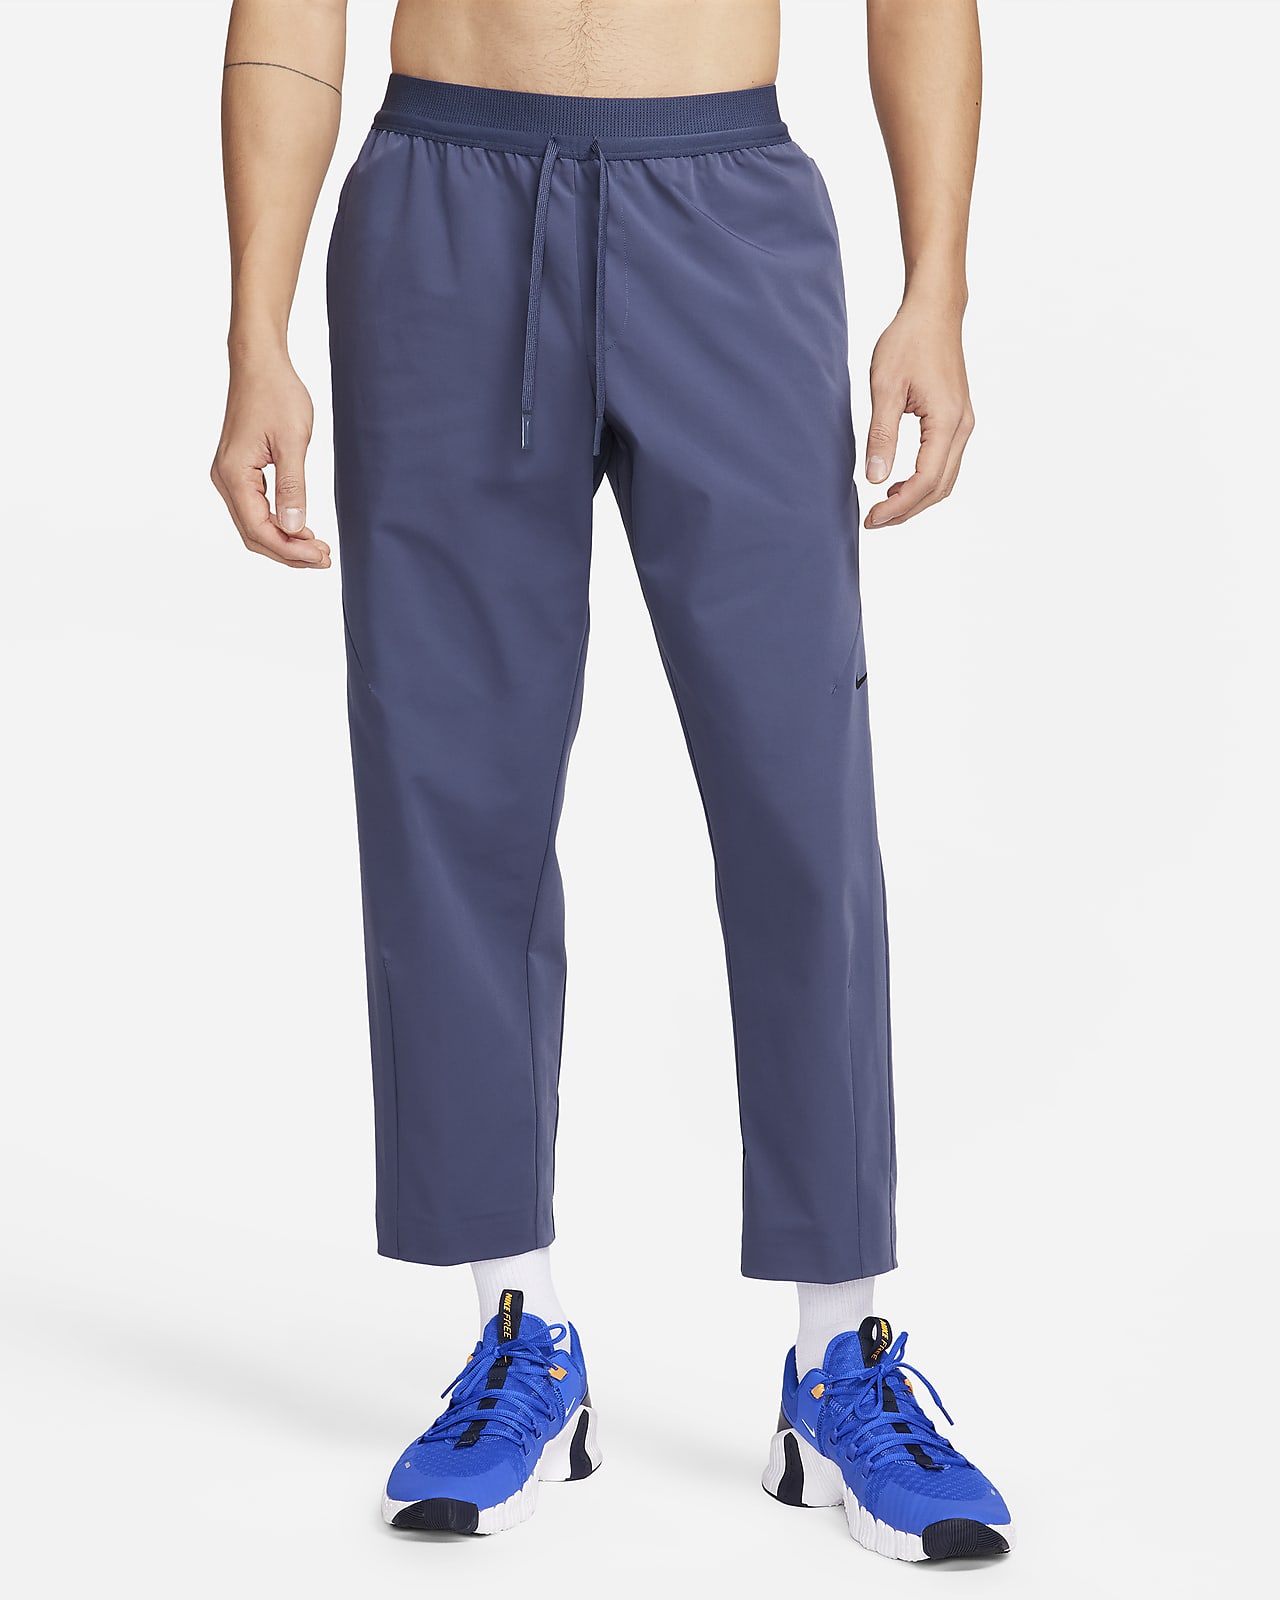 Nike A.P.S. Pantalons Dri-FIT versàtils i de teixit Woven - Home